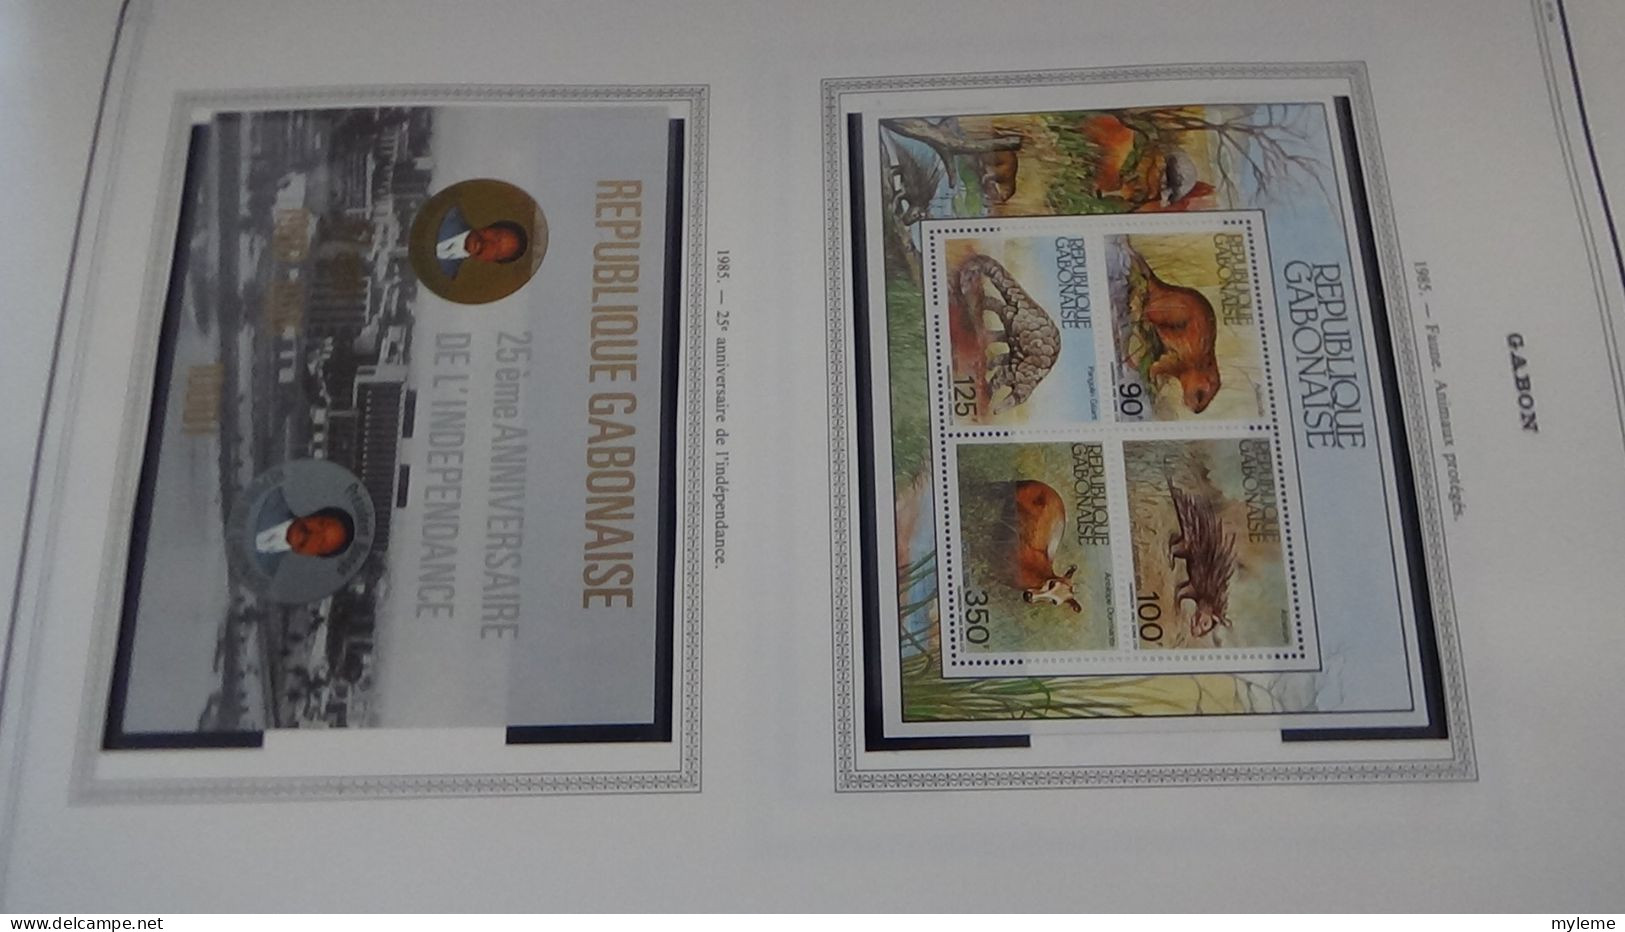 BC102 Collection de timbres et blocs ** du Gabon sur feuille d'album.  A saisir !!!